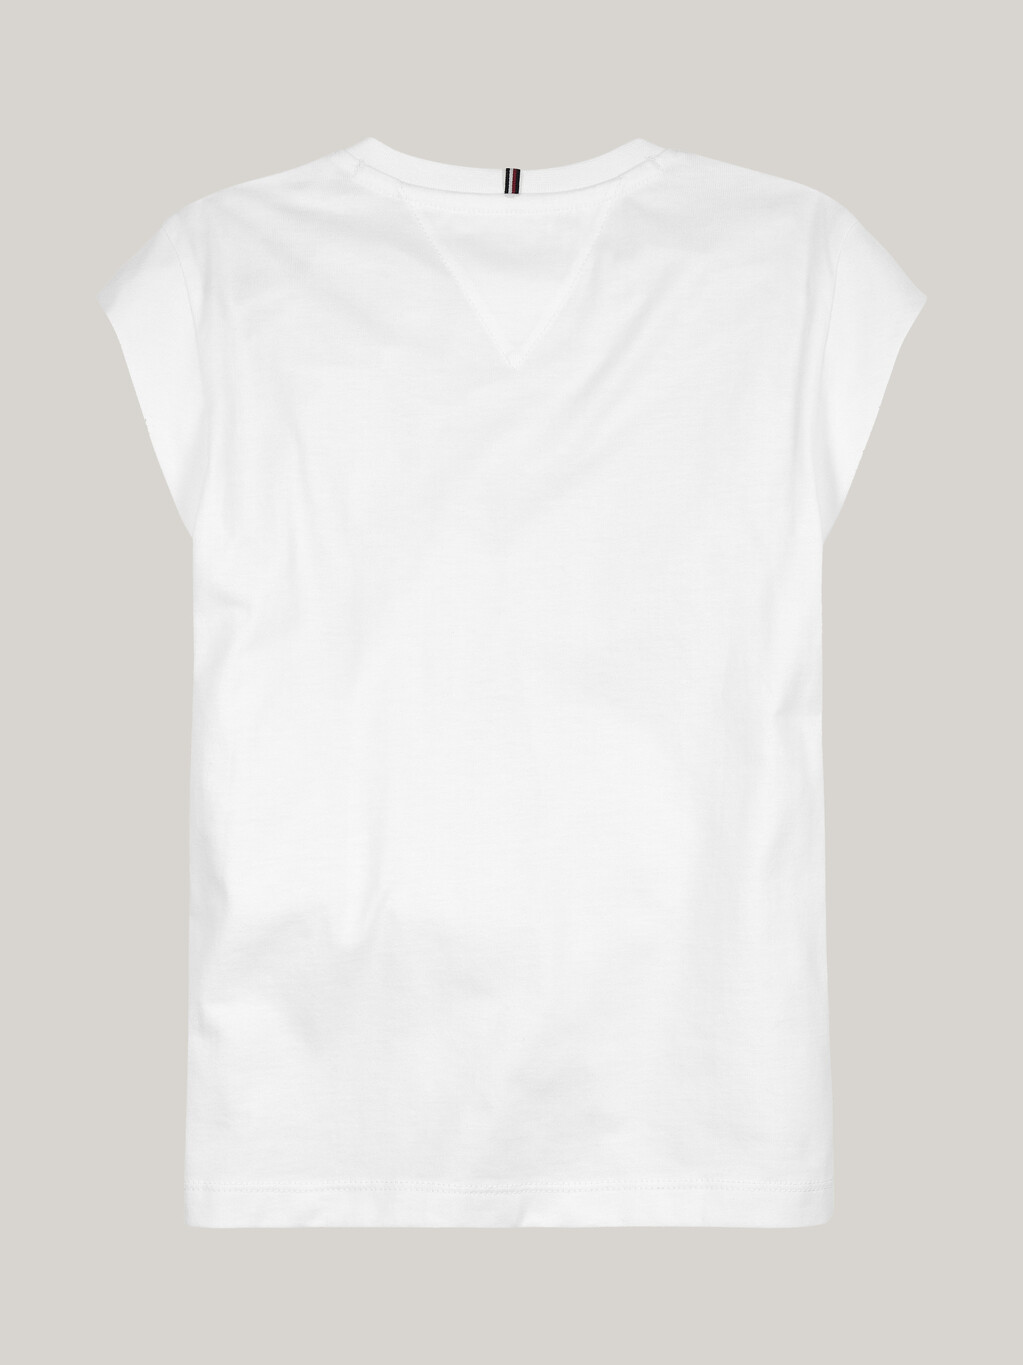 Girls New York Graphic T-Shirt, White, hi-res